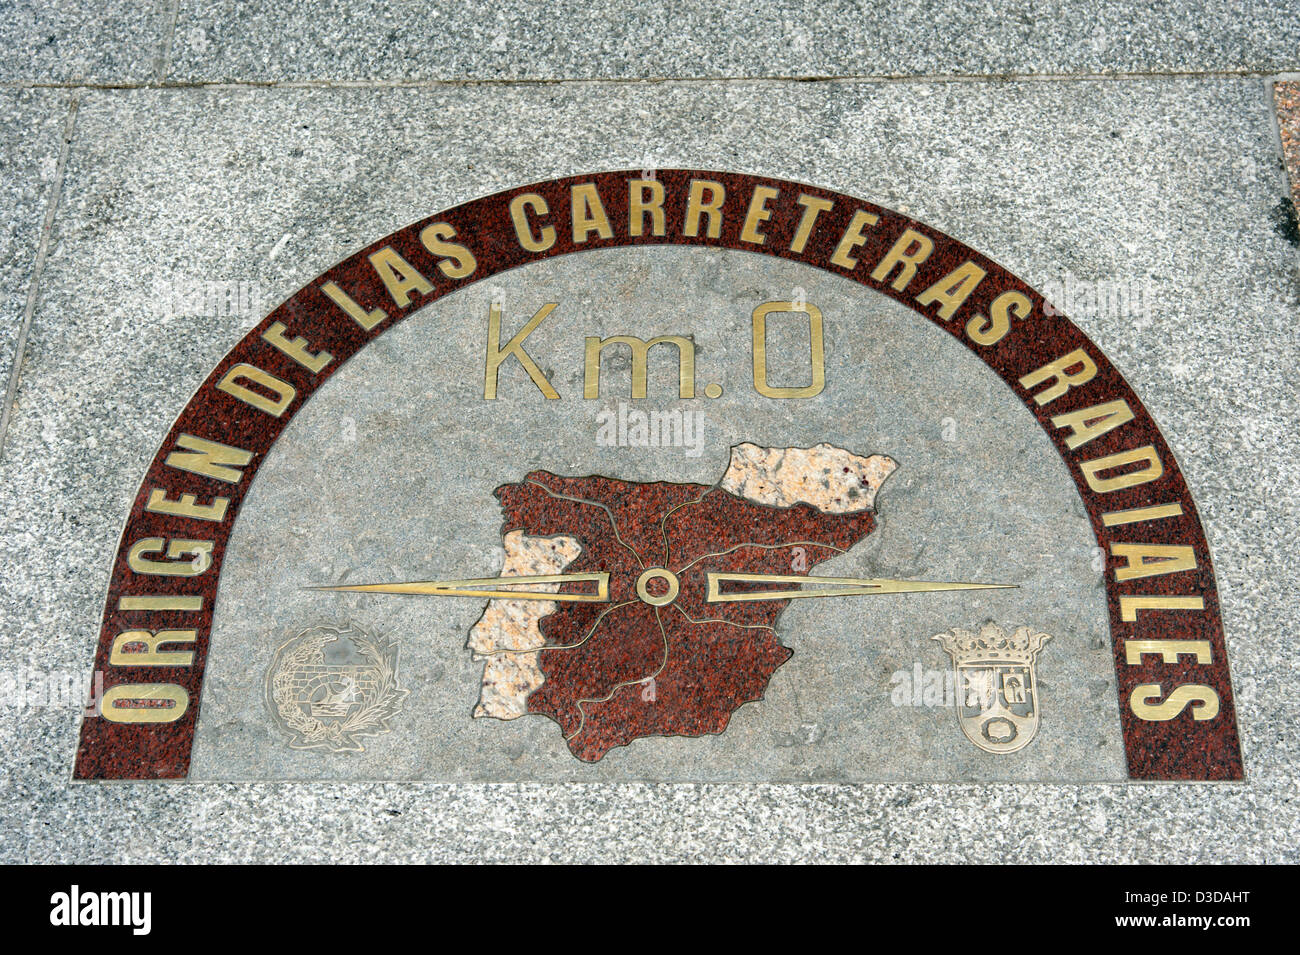 Km 0 auf dem Bürgersteig an der Puerta de Sol Kennzeichnung der Stelle, von dem alle Entfernungen gemessen werden, Madrid, Spanien Stockfoto